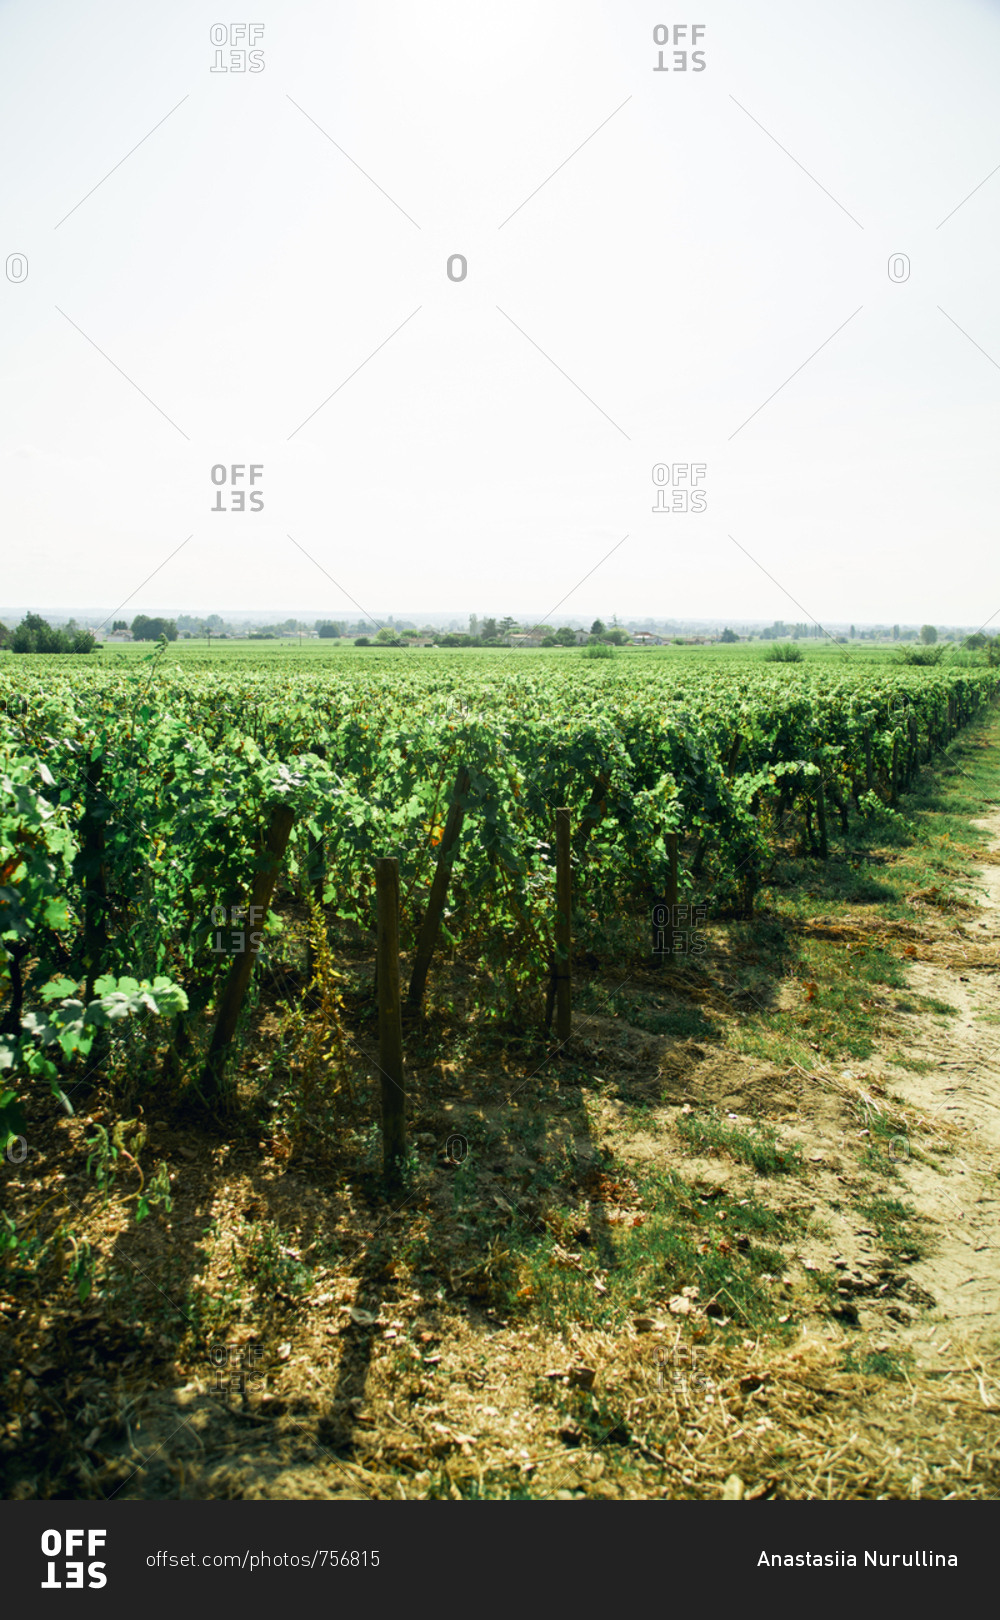 Vines at Saint-emilion wineyard near Bordeaux, France